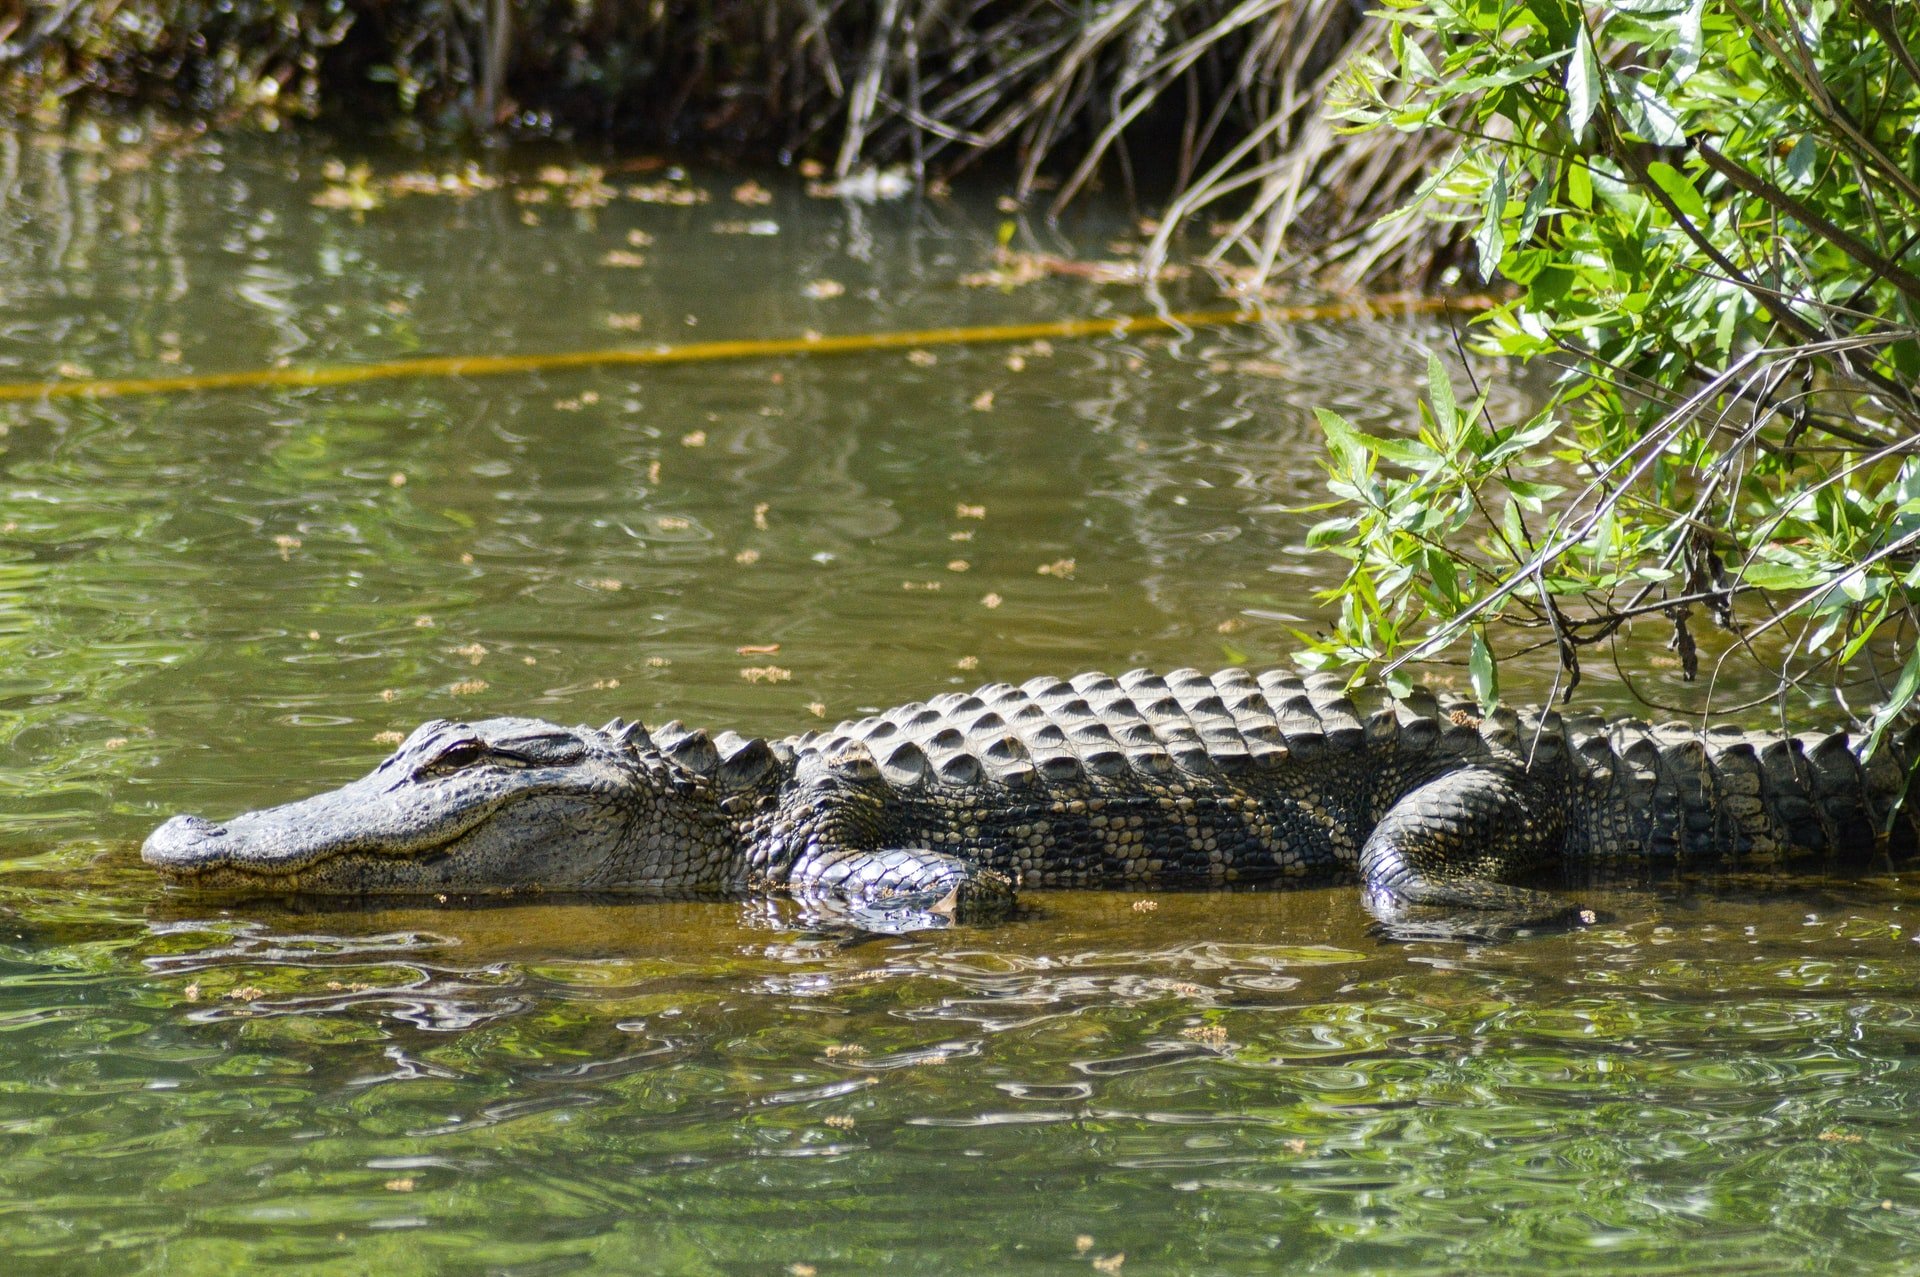 Alligator on water kayaking problem